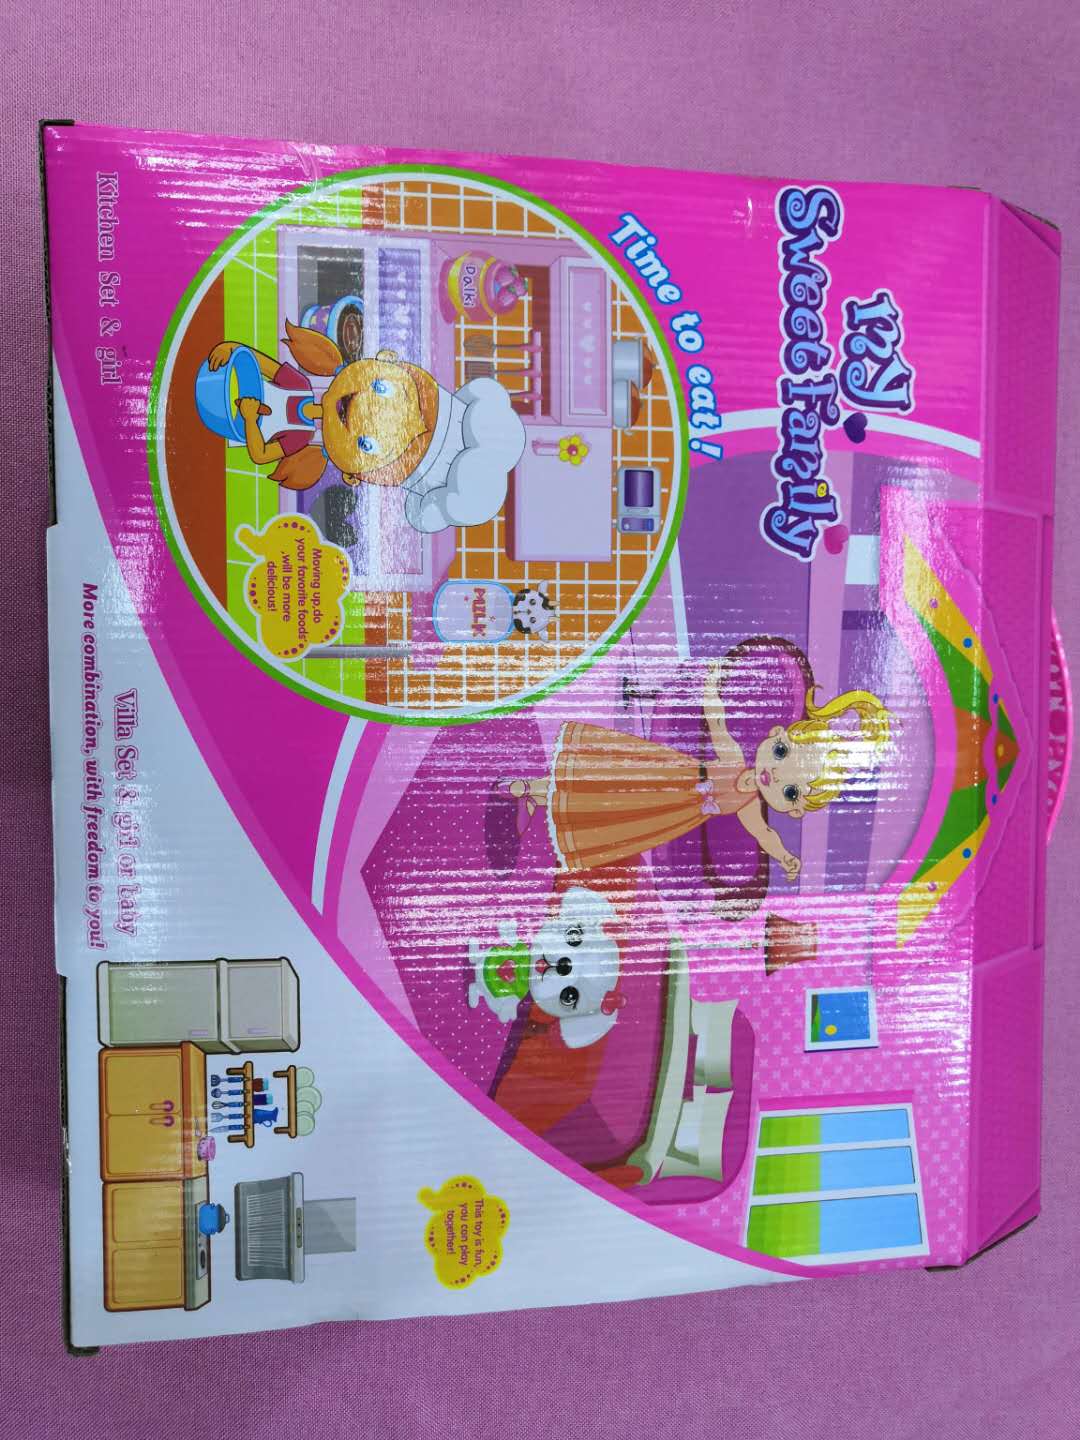 厨房装扮洋娃娃芭比娃娃过家家玩具0903-55厂家批发产品图